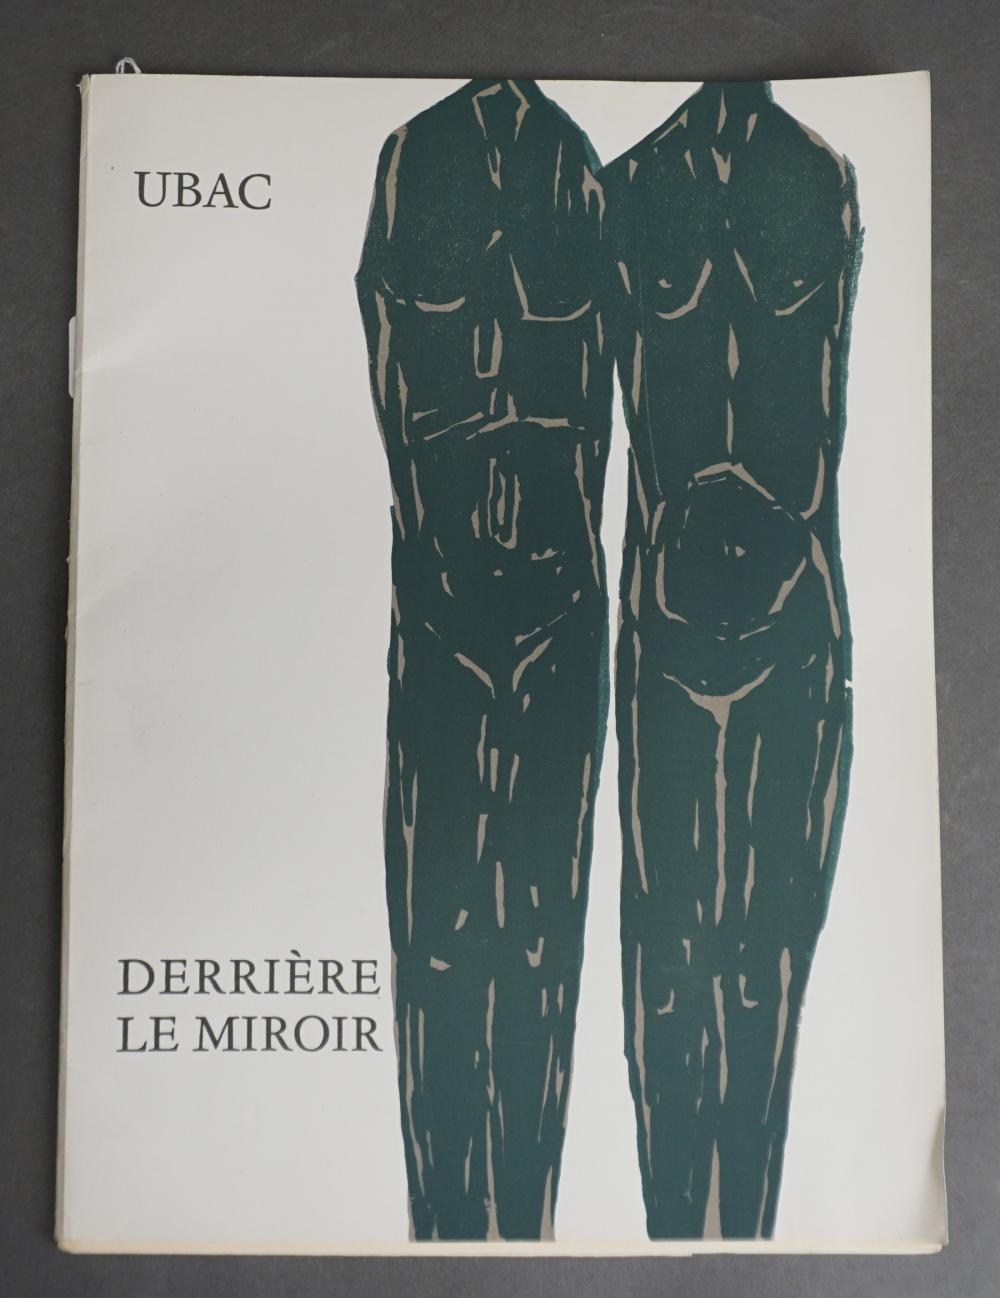 DERRIERE LE MIROIR UBAC 161 330e4d